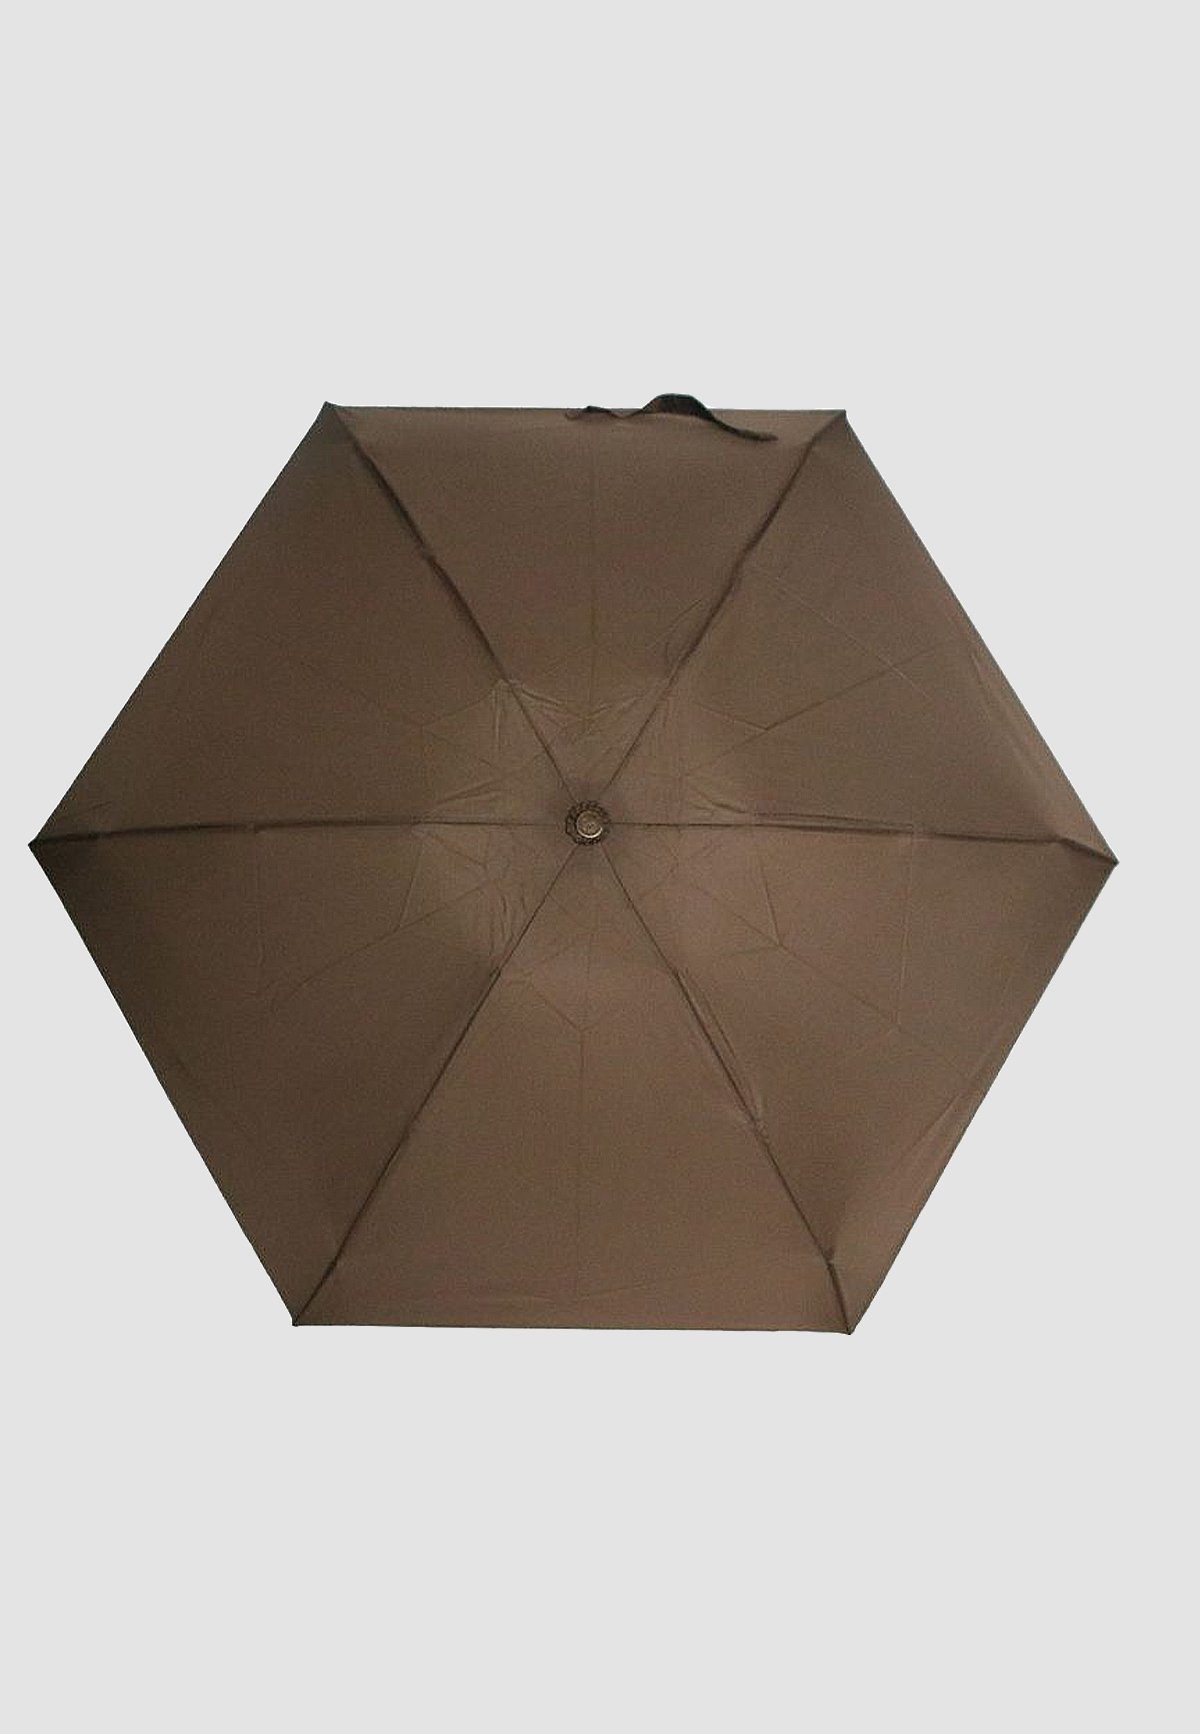 Taschenregenschirm Regenschirm Leichte ANELY 4683 Kleiner Taschen Ausführung, Braun in